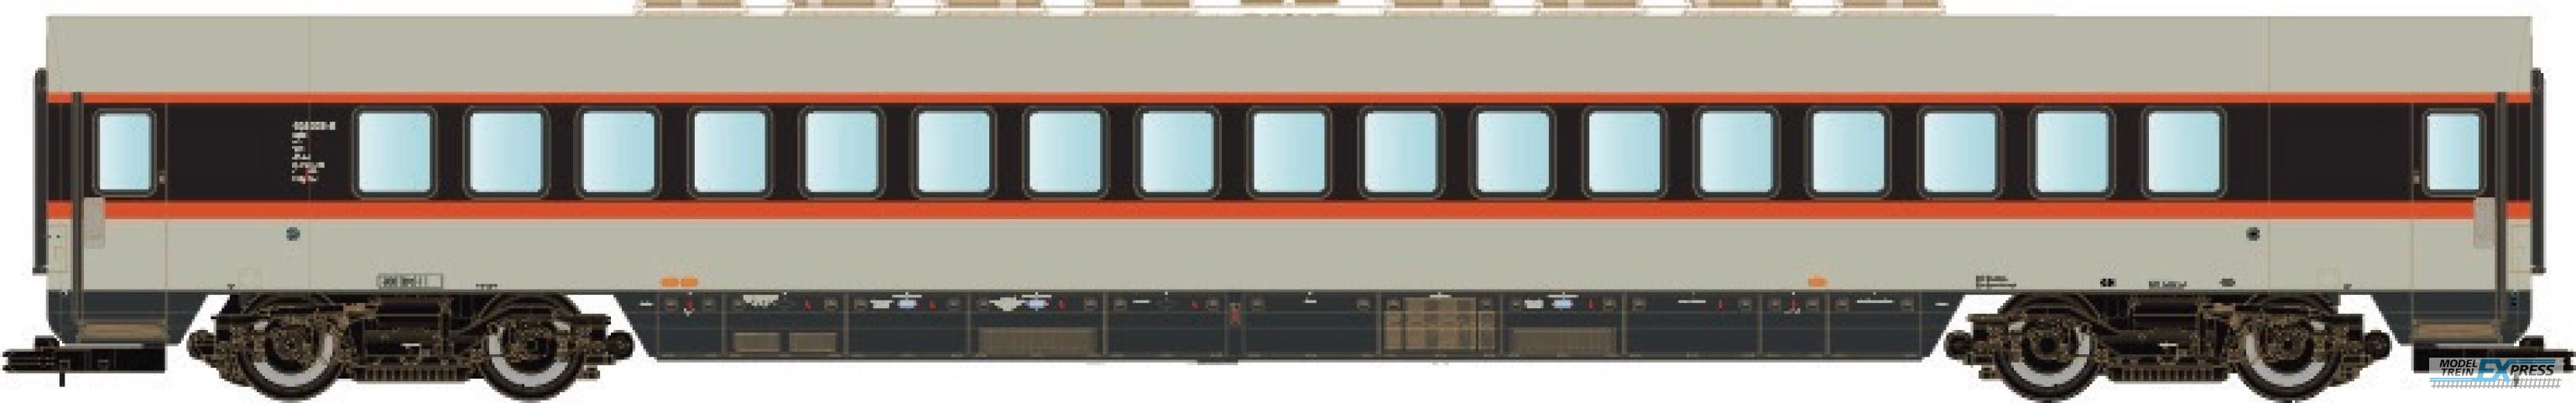 LS Models 16004 DB ET 403, coach-rijtuig, grijs/rood/zwart, IC, versterkingswagen  /  Ep. IVa  /  DB  /  HO  /  DC  /  1 P.